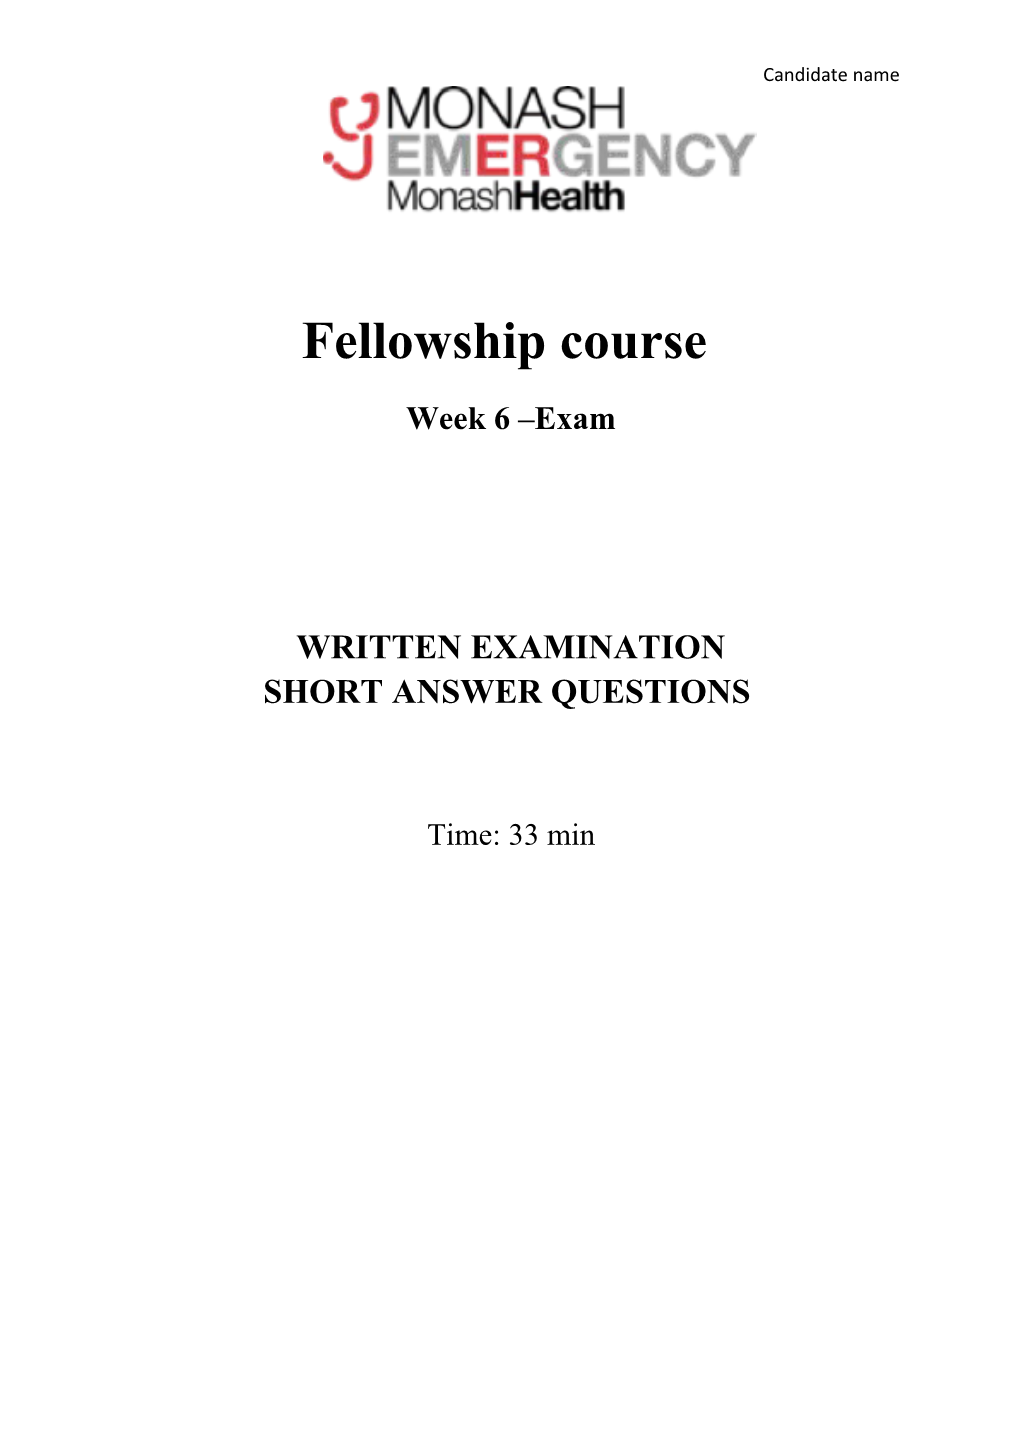 Fellowship Course